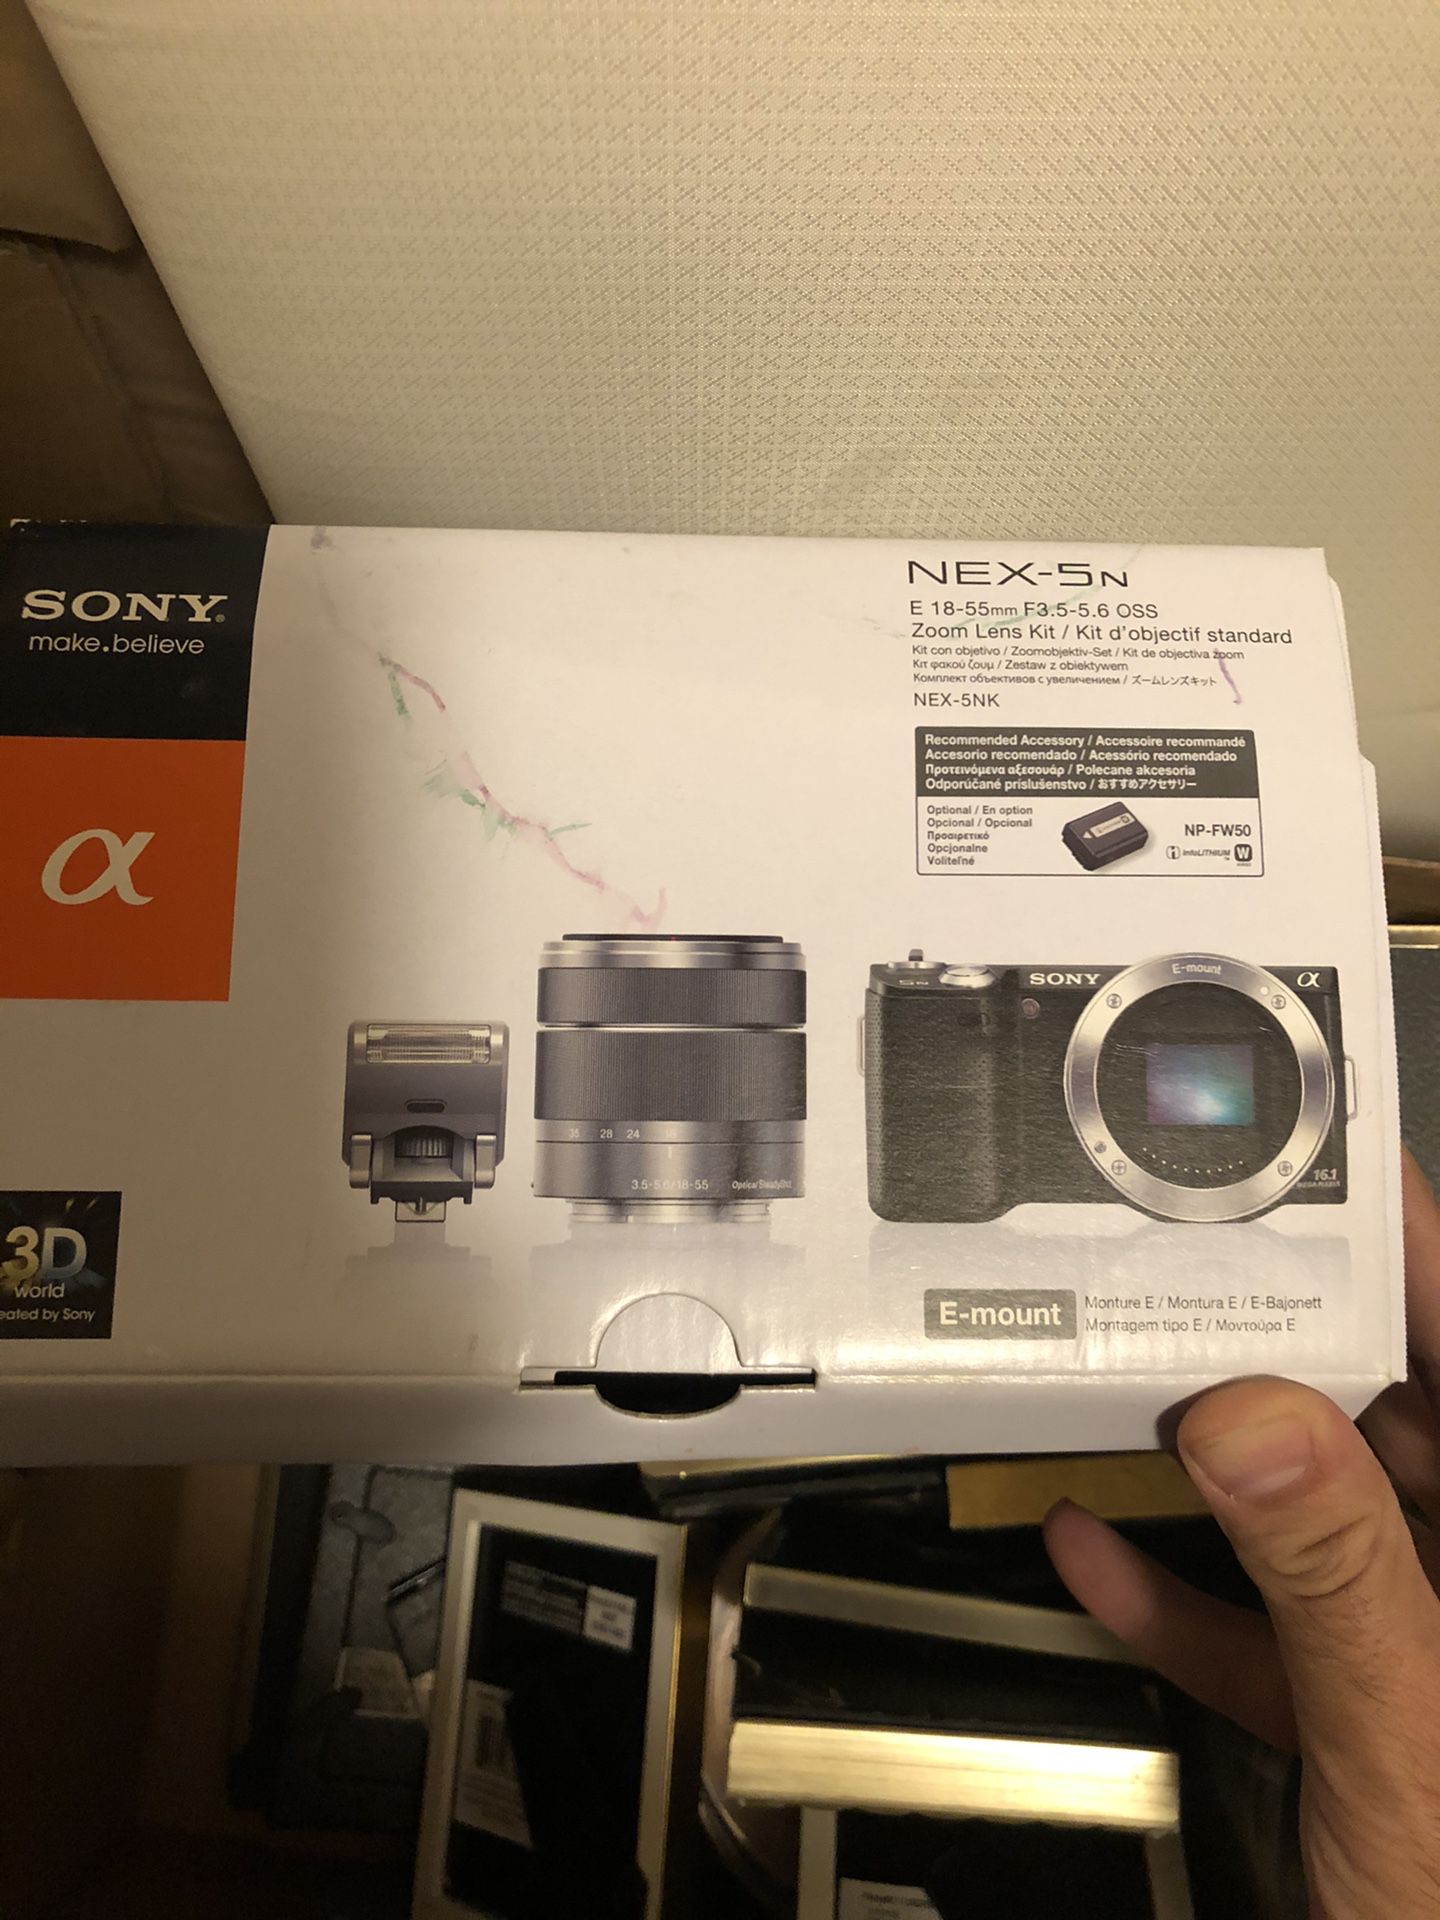 Sony camera nex-5n